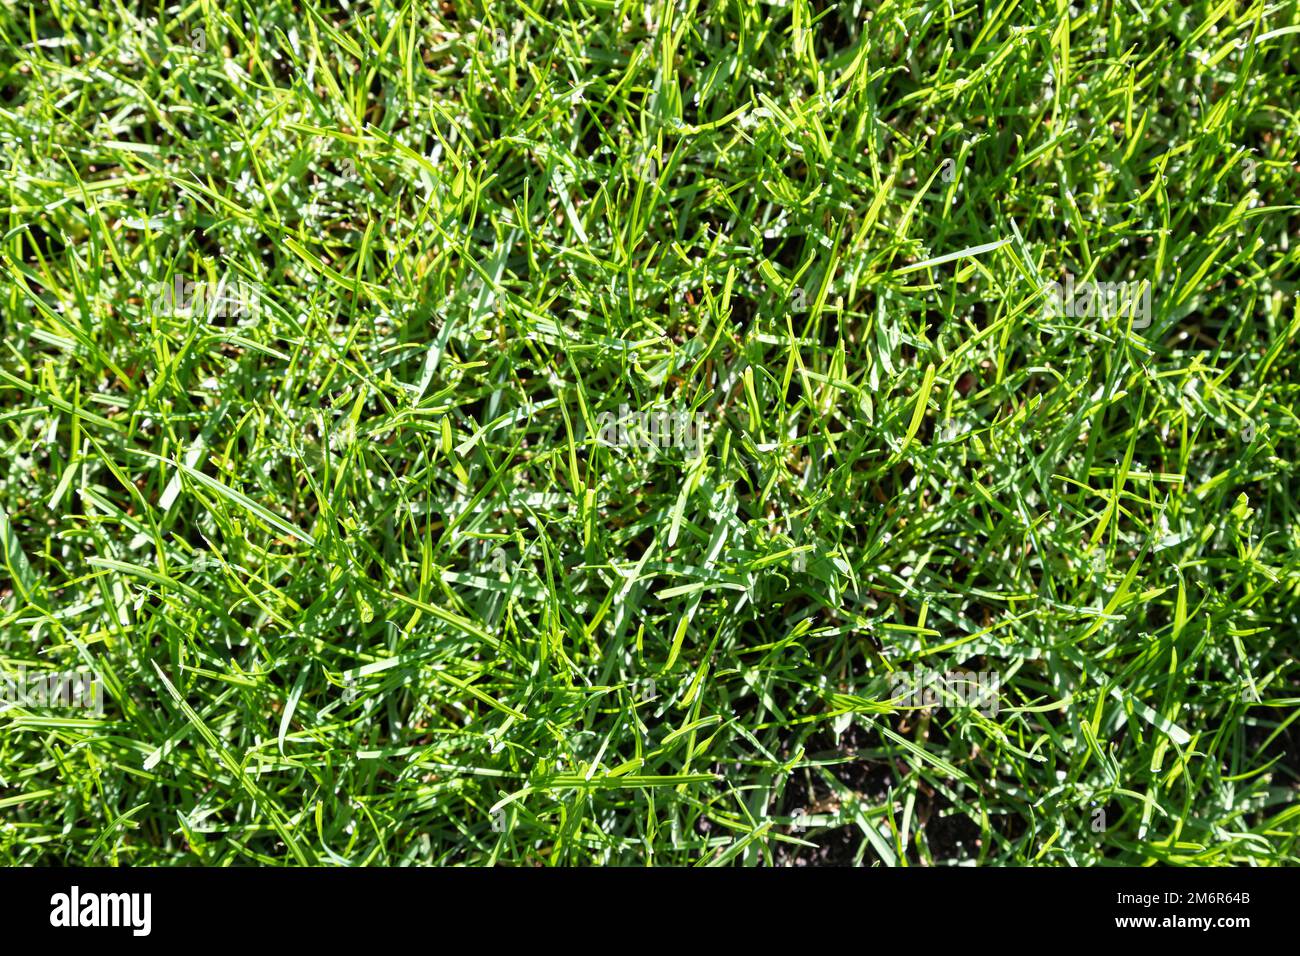 Green grass texture Stock Photo